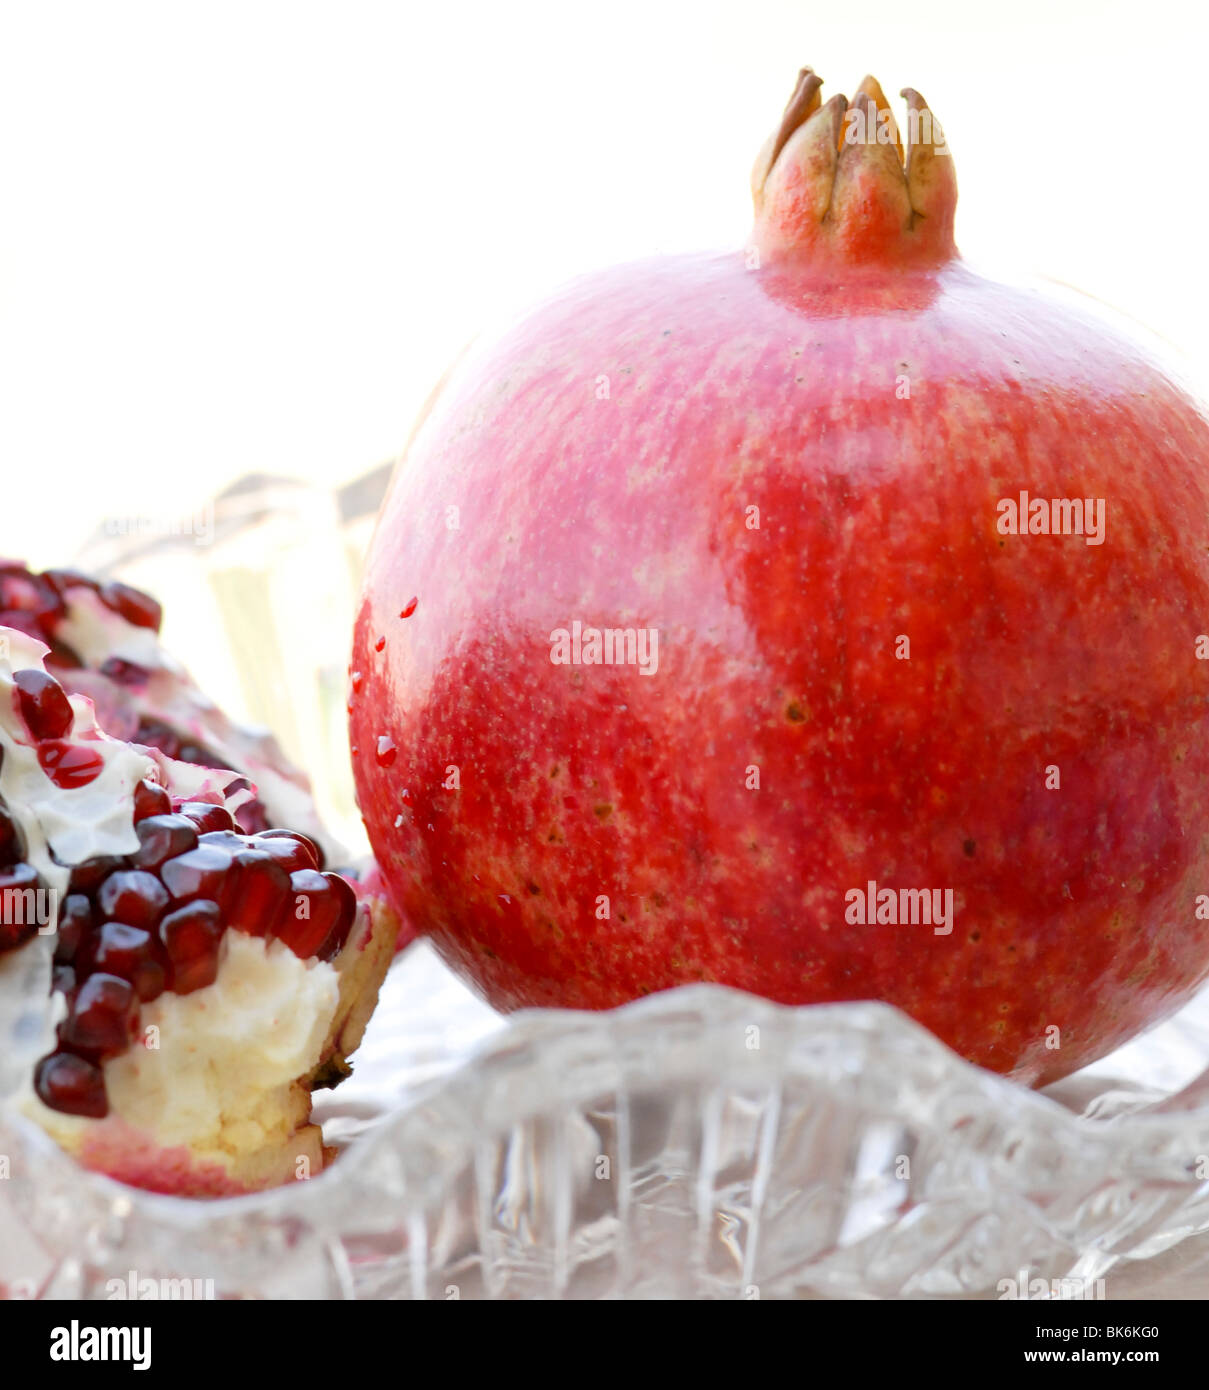 ganz rote Reife Granatapfel mit einer offenen Granatapfel zeigt die Samen Stockfoto